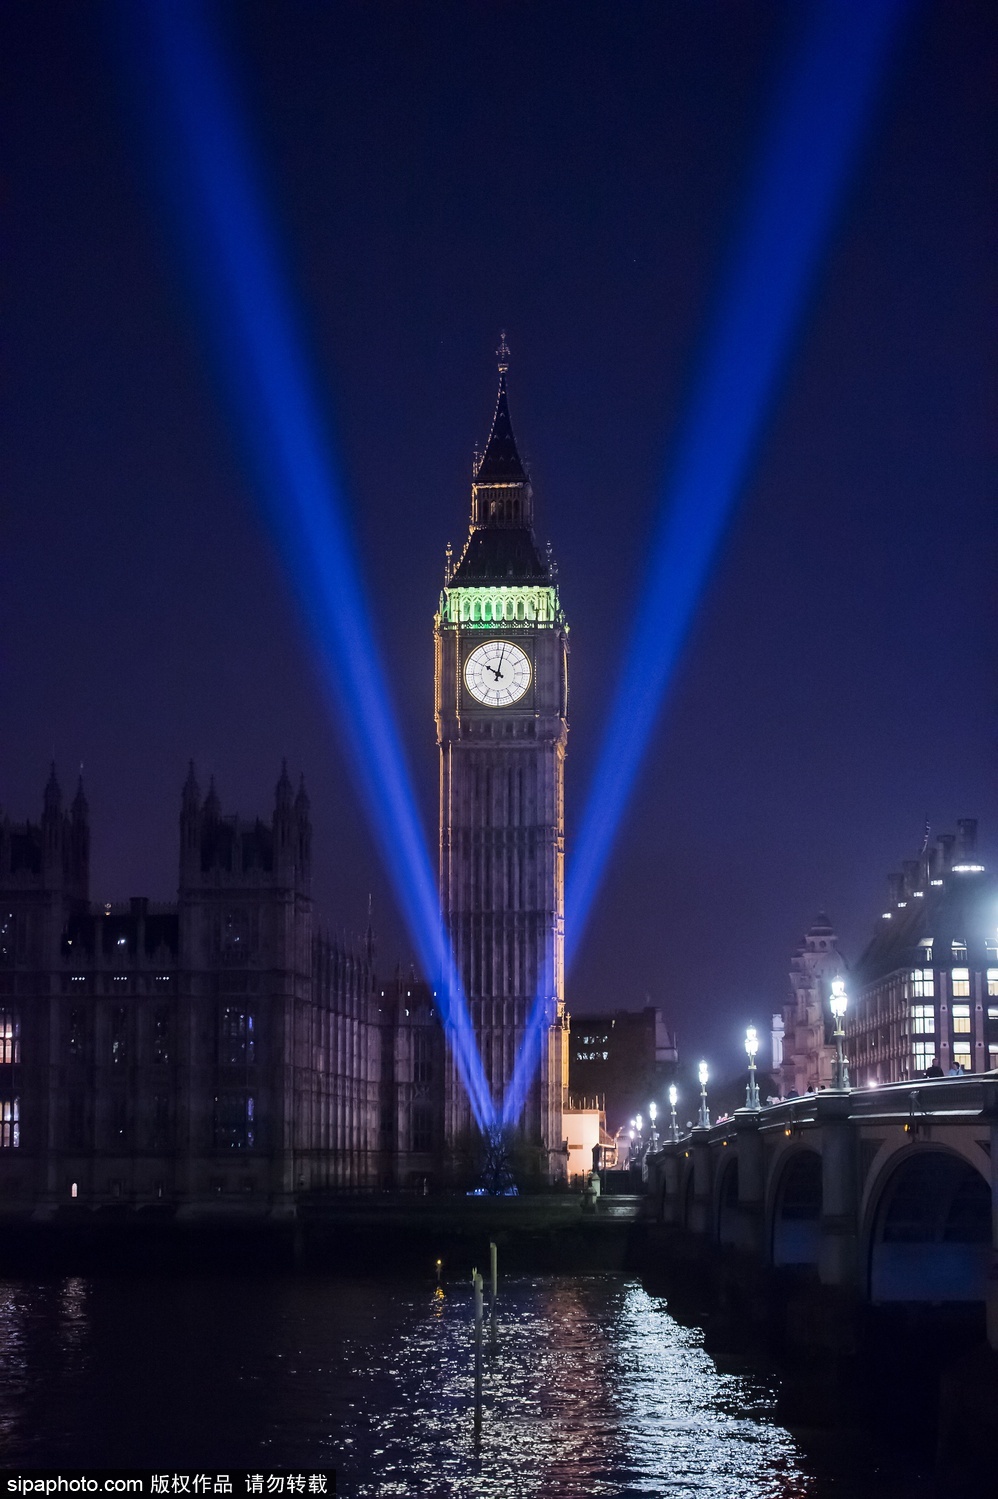 伦敦大本钟亮“V”字灯 纪念二战欧洲胜利日70周年